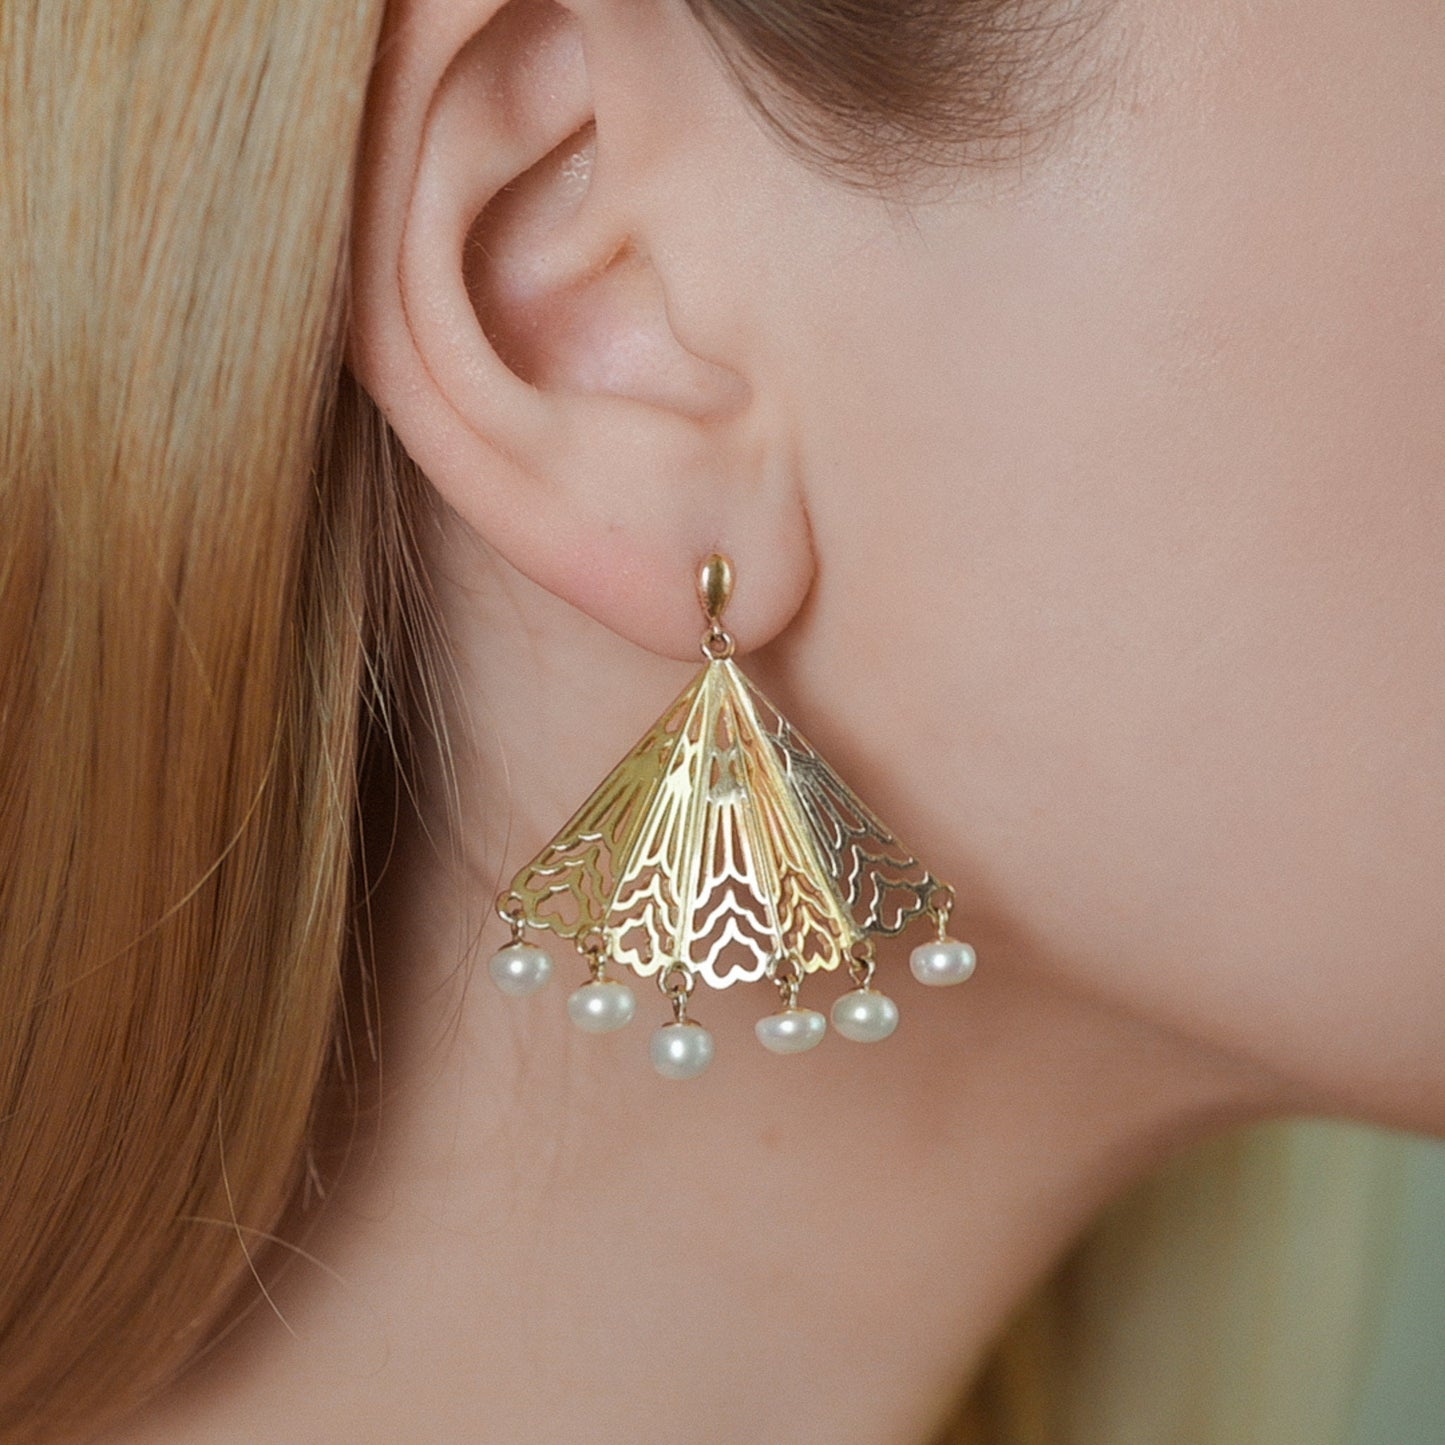 Art Deco Inspired Fan Earrings